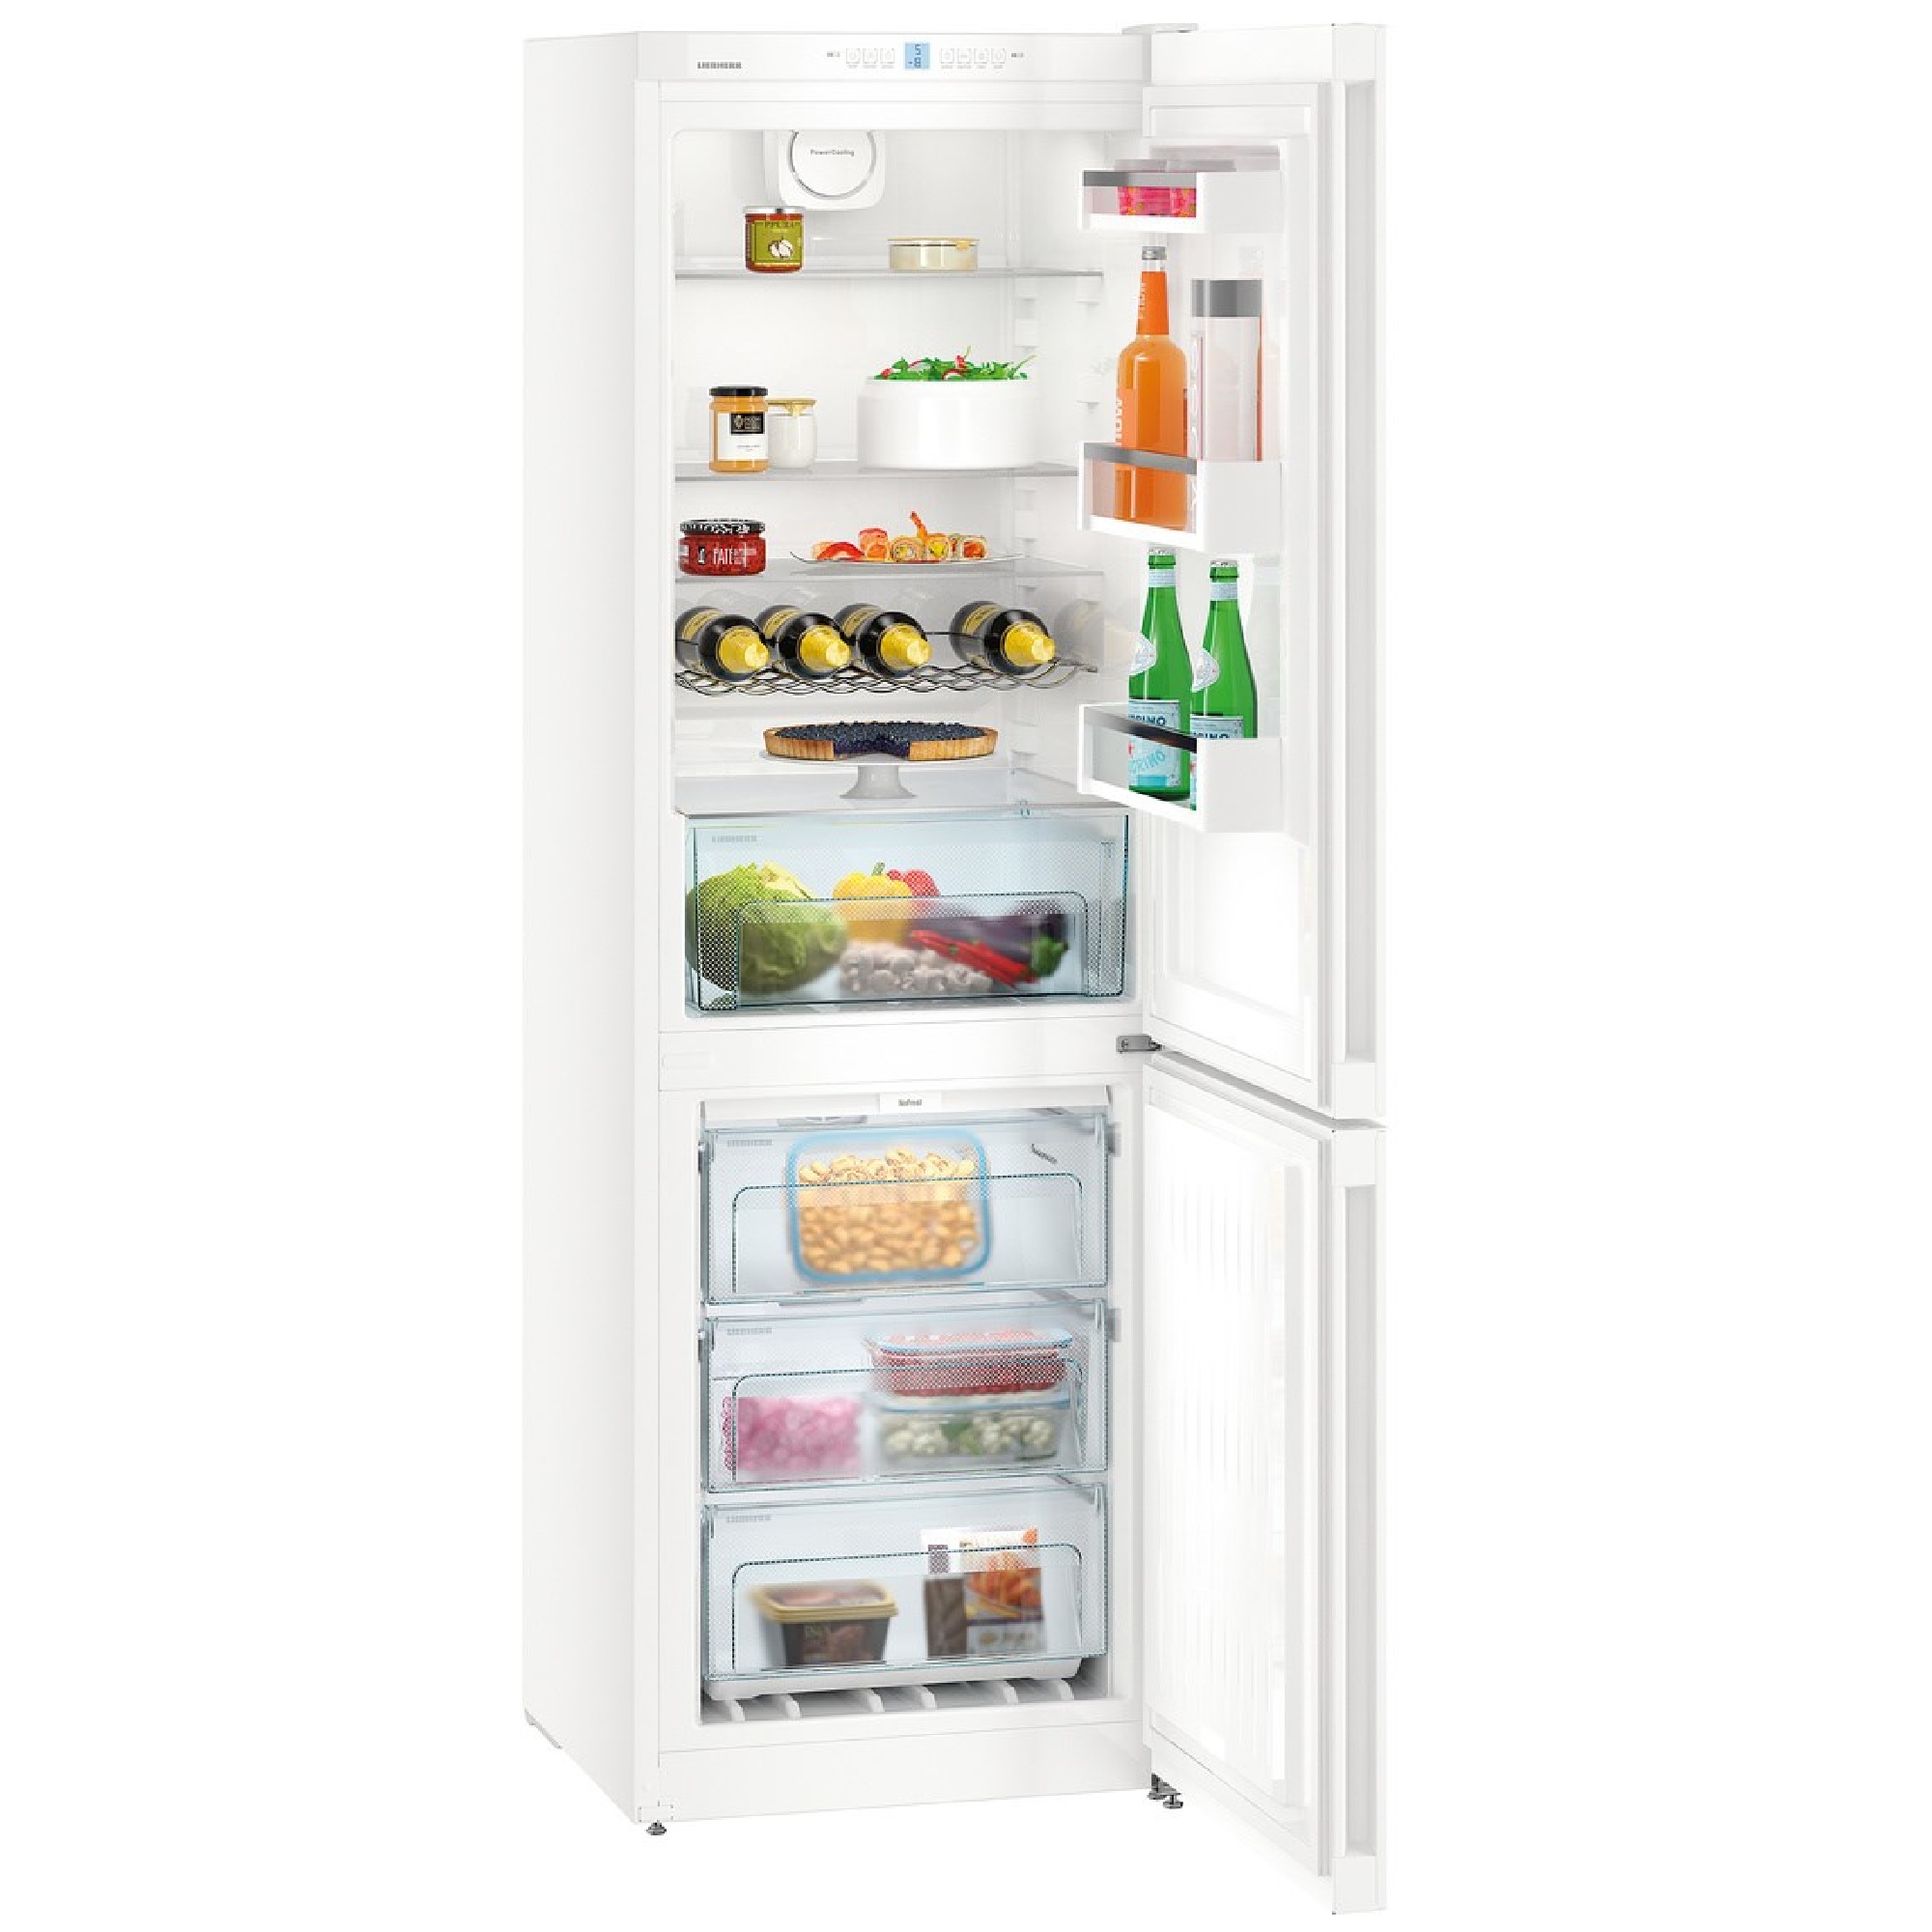 Холодильник двухкамерный купить в москве цена. Холодильник Liebherr cnpef4813. Холодильник Liebherr (Либхер) CNPEL 4813. Холодильник Liebherr CNPEF 4813-22. Холодильник Liebherr chel 4813.